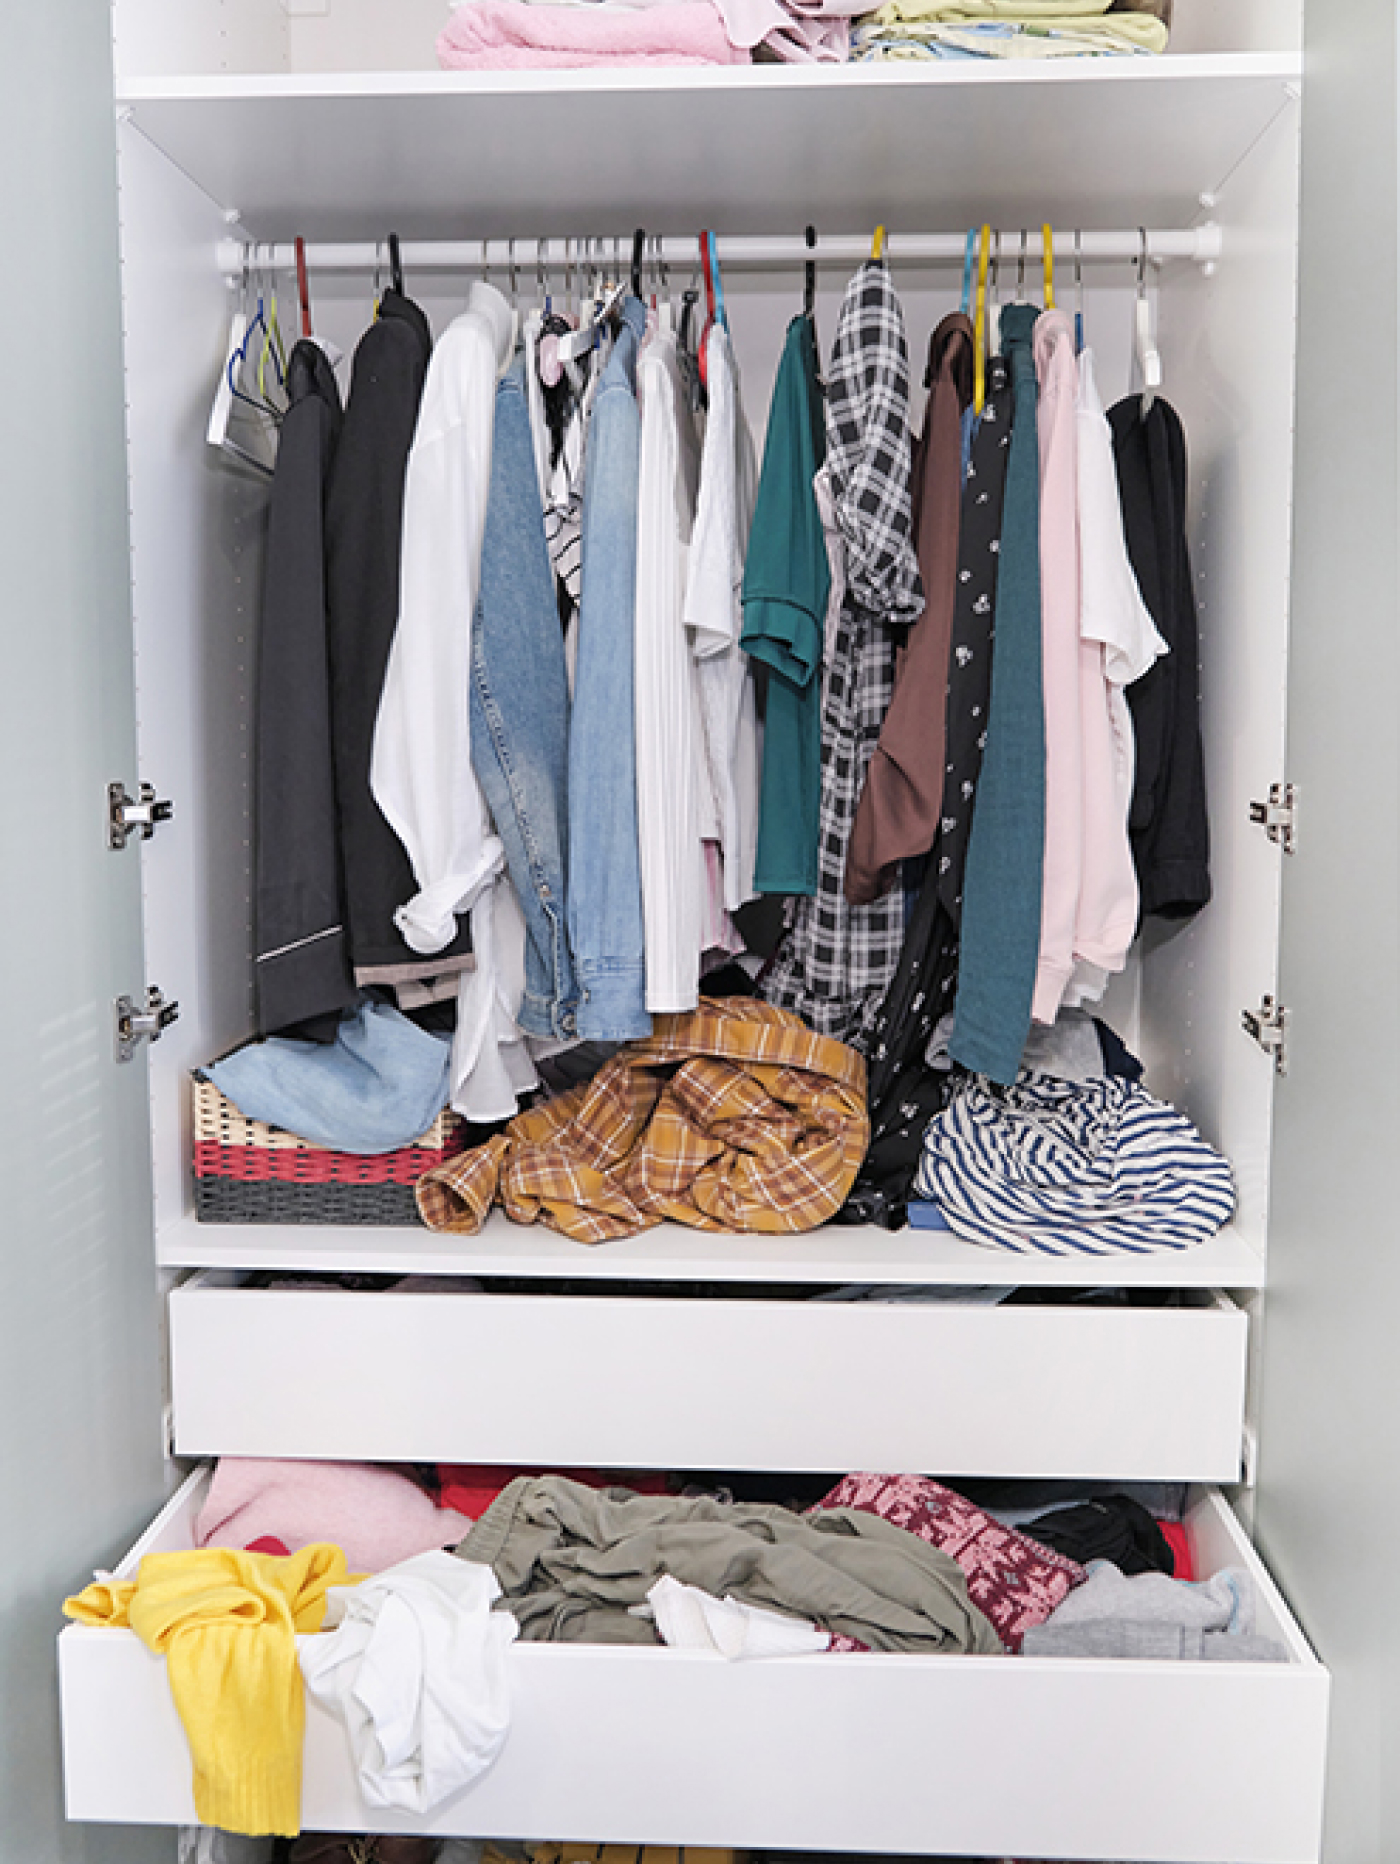 В шкафу все вещи свалены в кучу. Фото: Yavdat / iStock